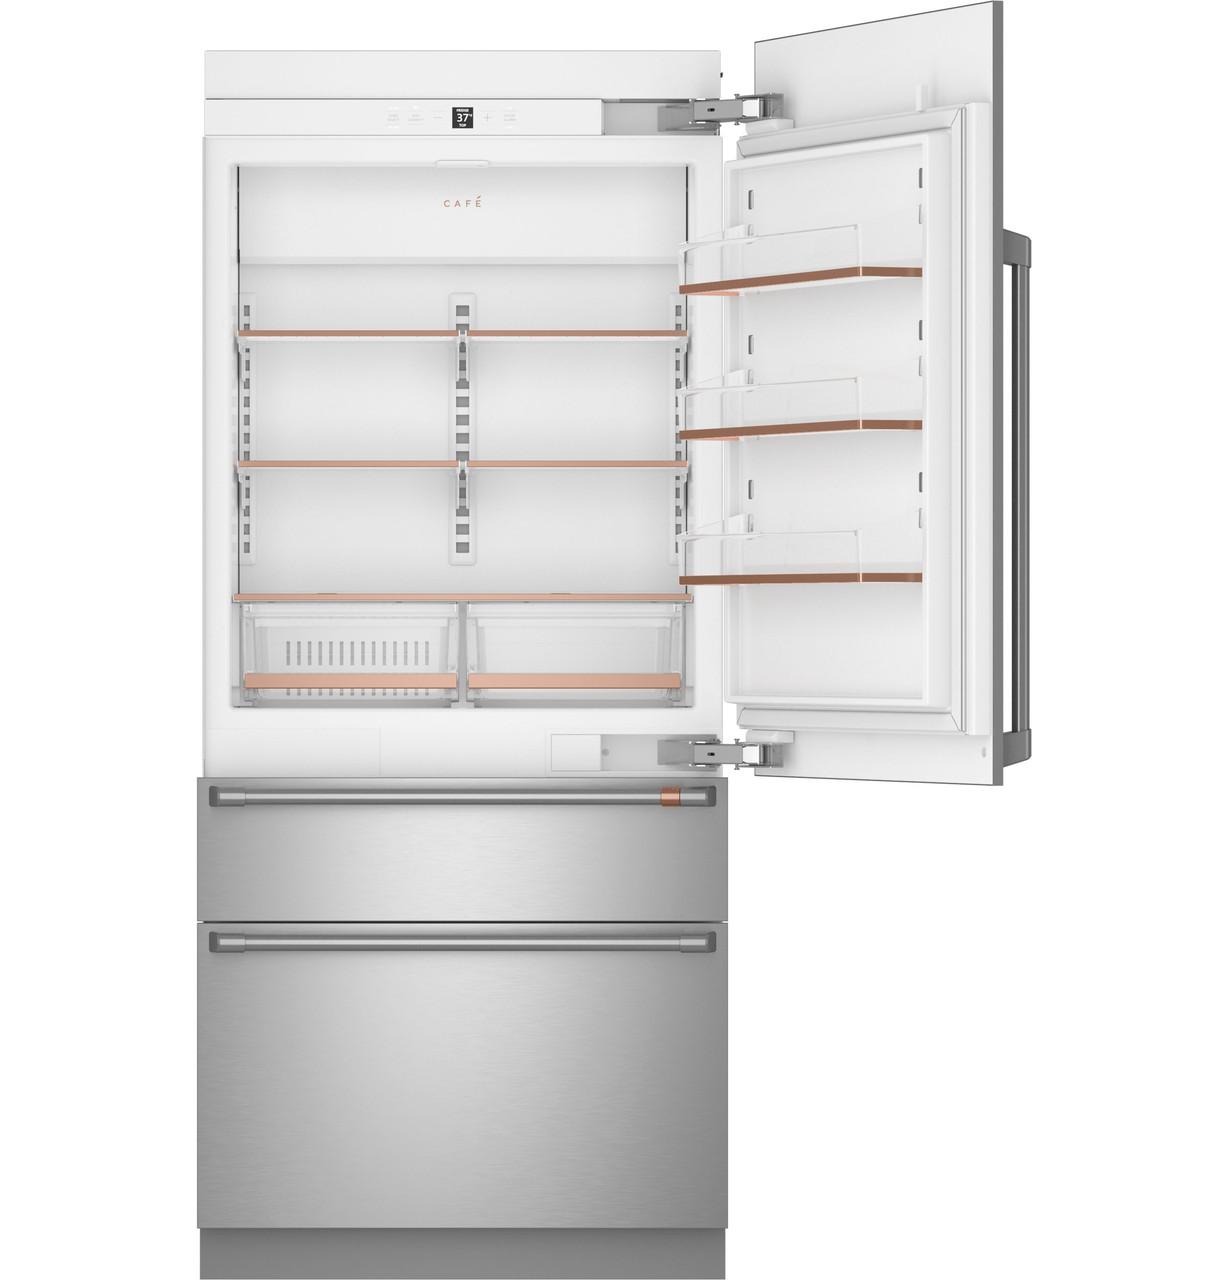 Cafe Caf(eback)™ 36" Integrated Bottom-Freezer Refrigerator